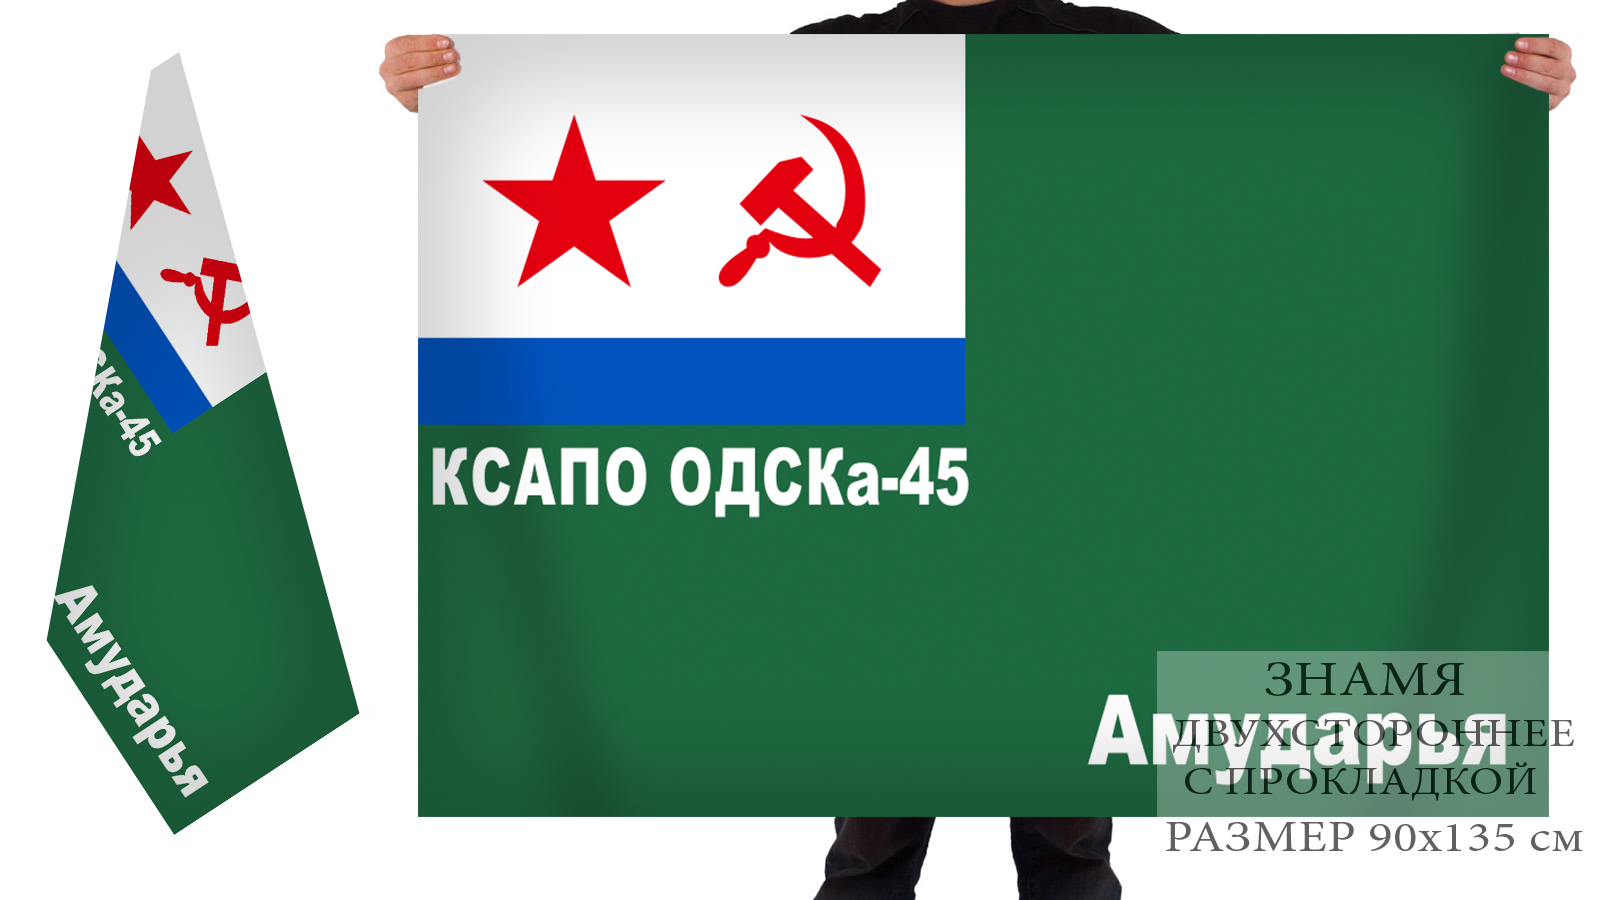 Двусторонний флаг 45 ОДСКА Краснознамённого Среднеазиатского ПО